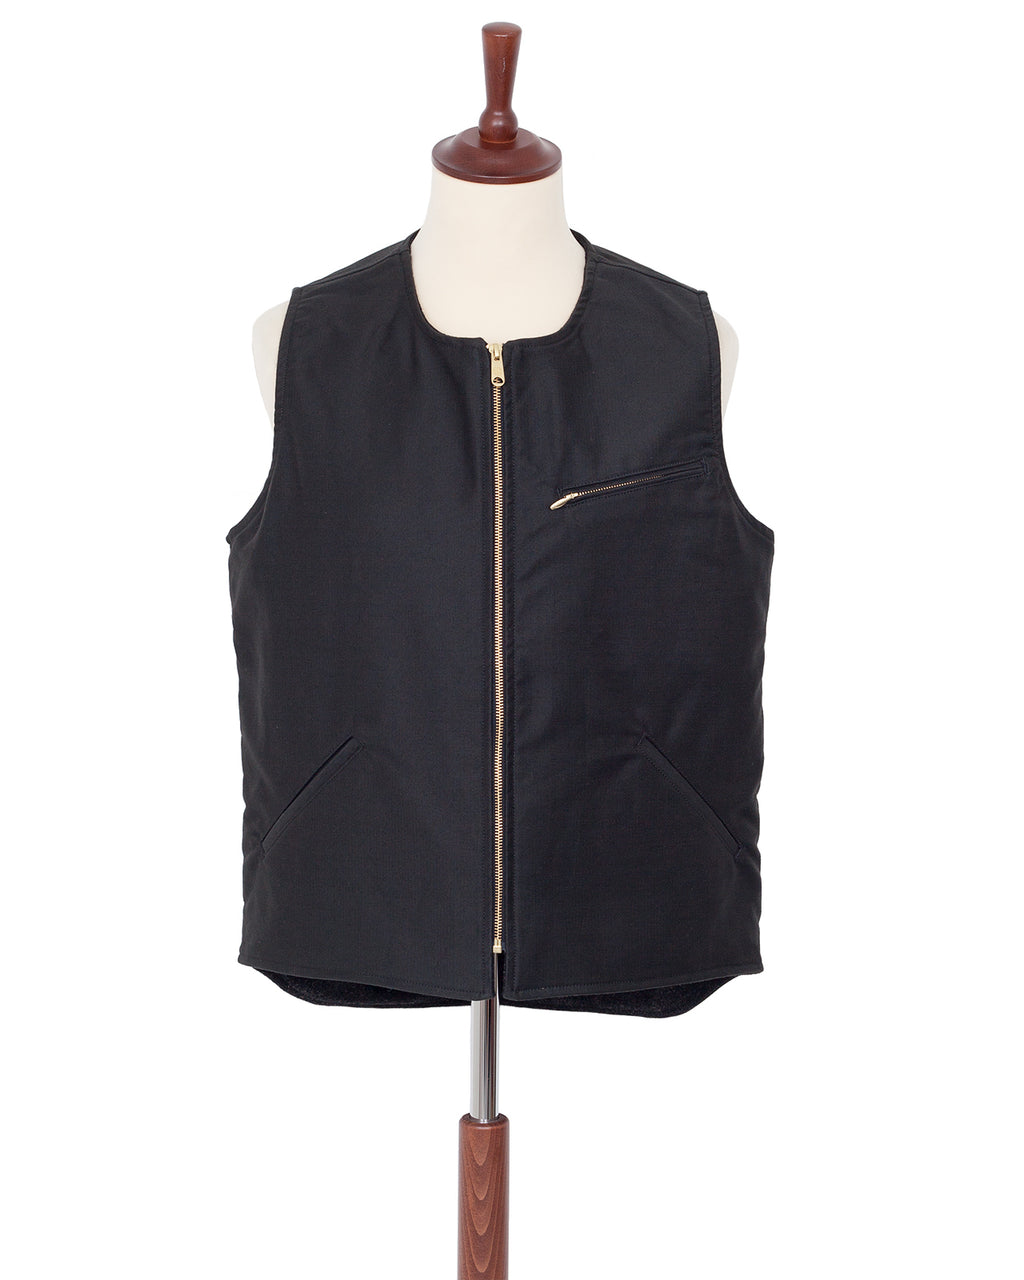 Indigofera Iconic Vest, Charcoal